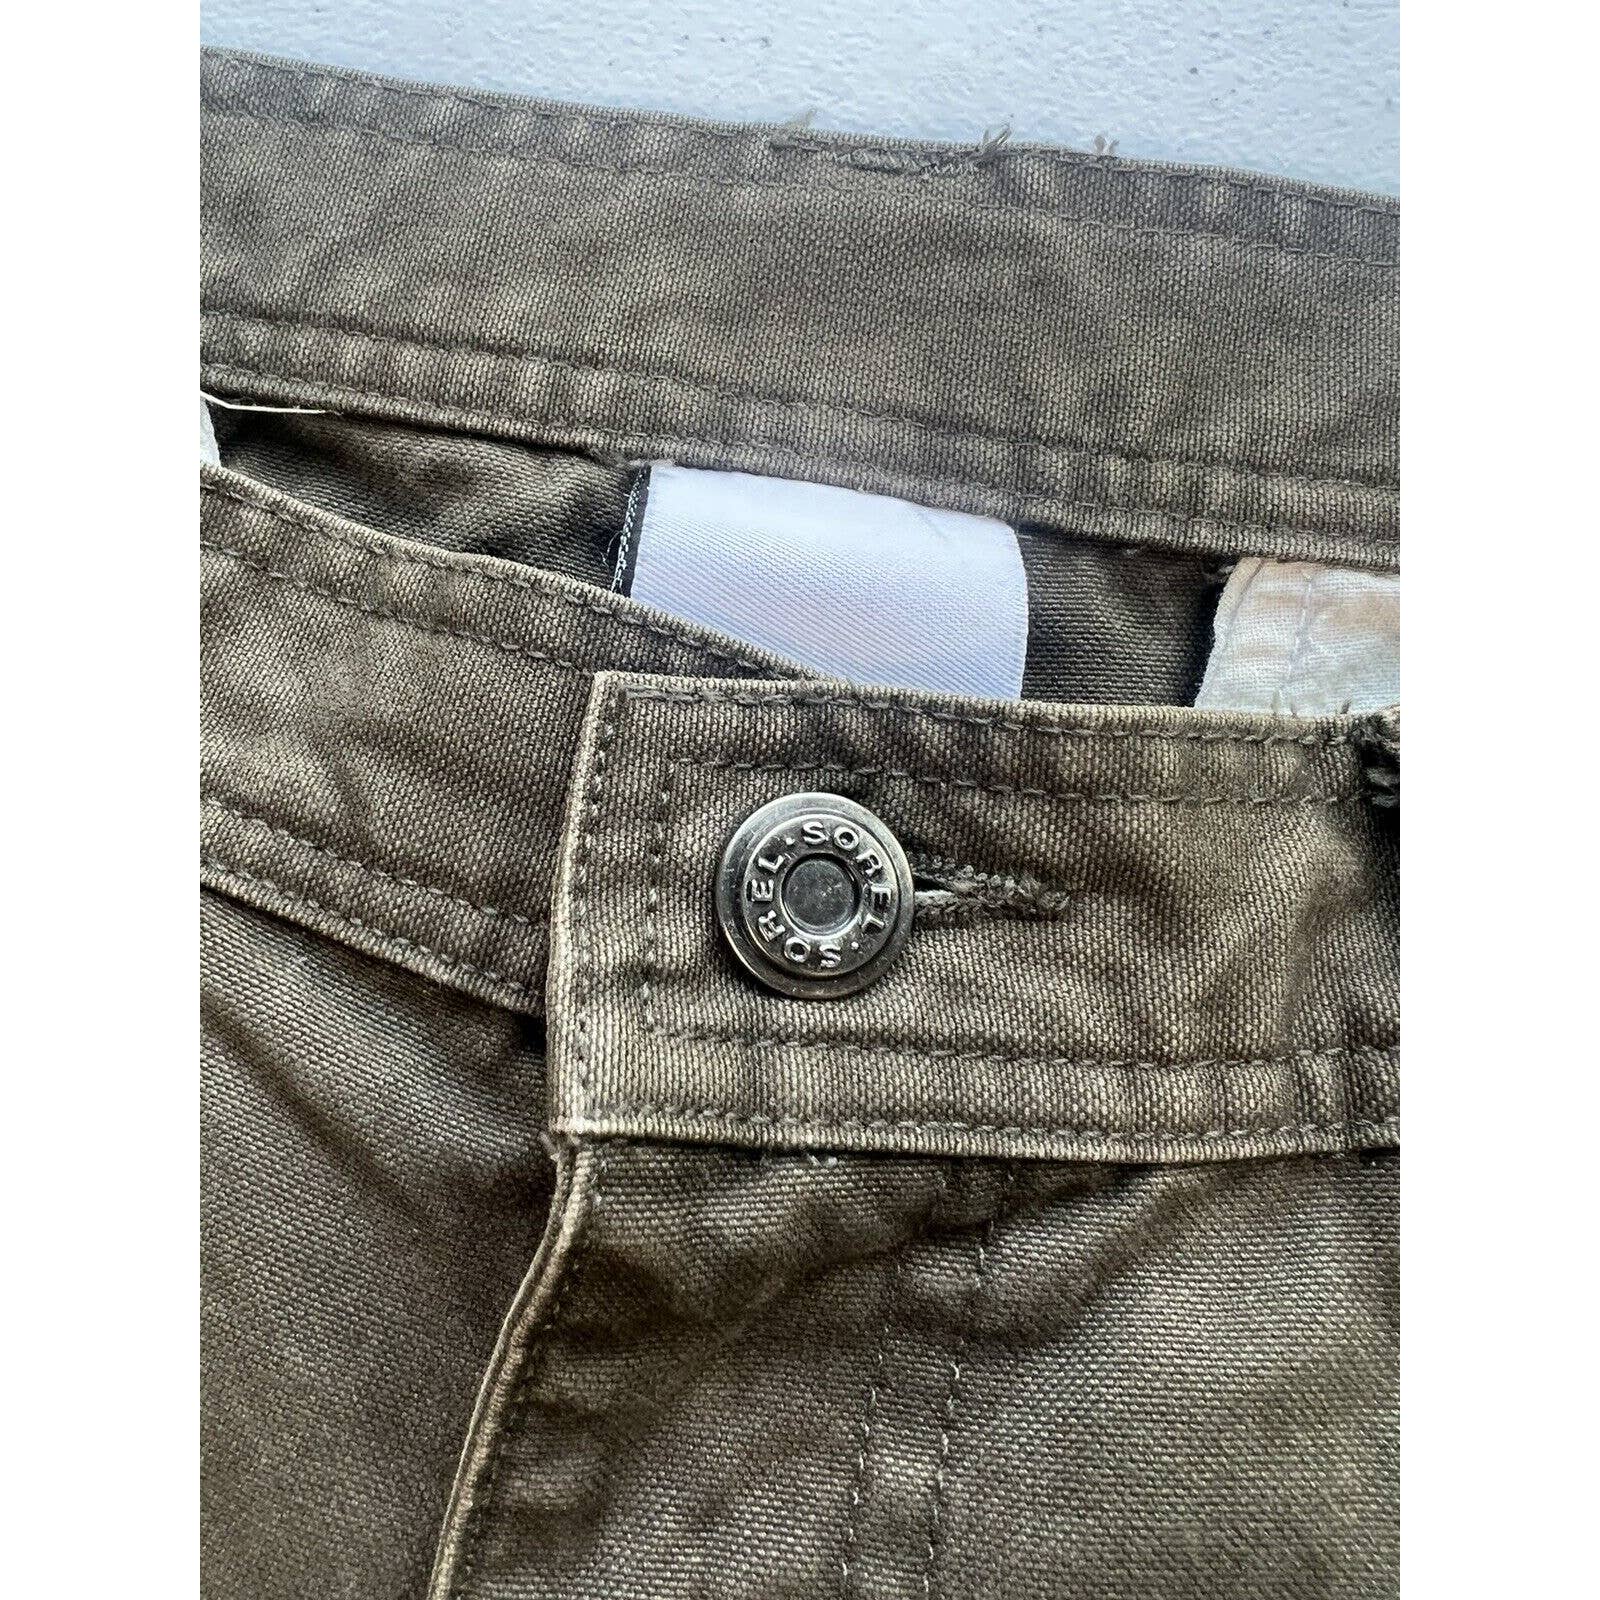 Sorel Zip Off Convertible Pants Men’s 34x30 Ripstop Heavy Workwear Hiking Green